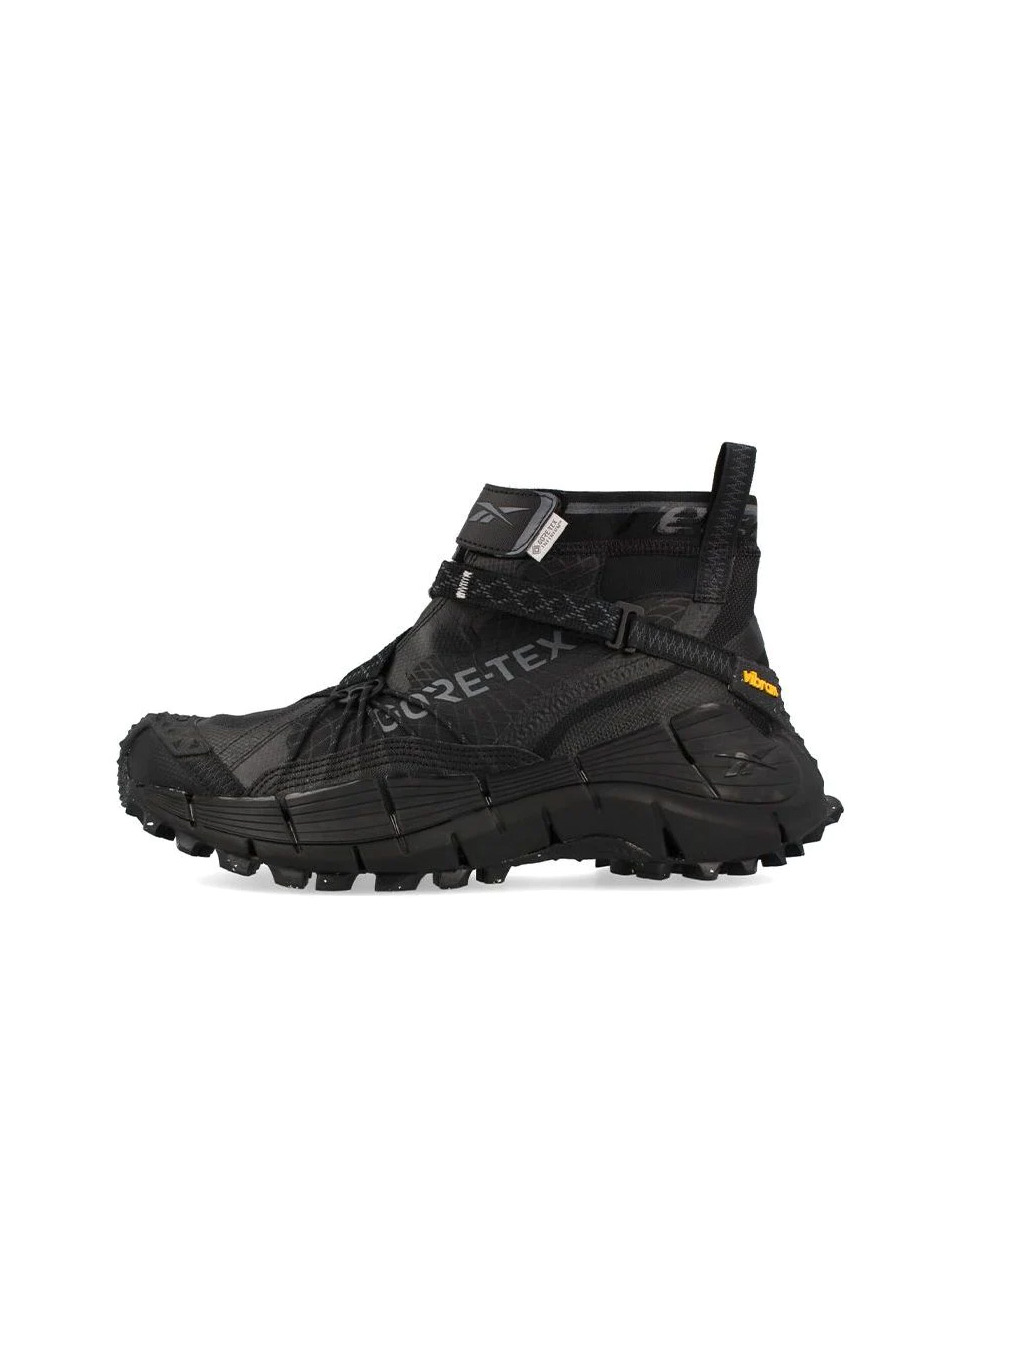 Reebok Zig Kinetica II Edge GORE-TEX 'Black' Techwear Sneakers - 3